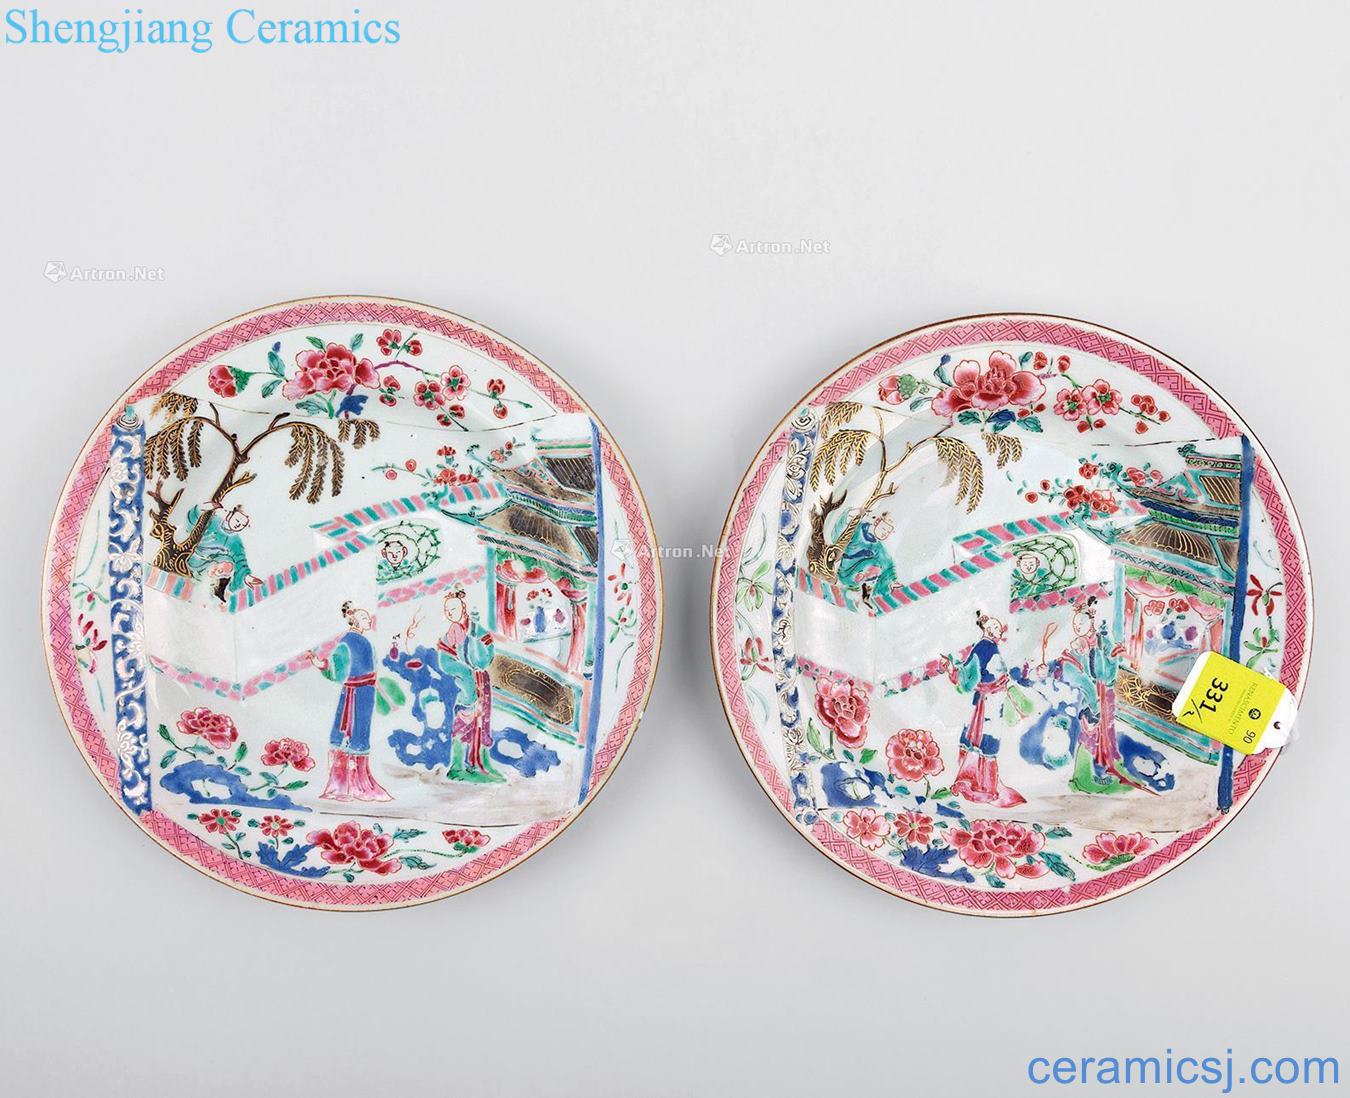 Qing yongzheng pastel romance story figure plate (a)